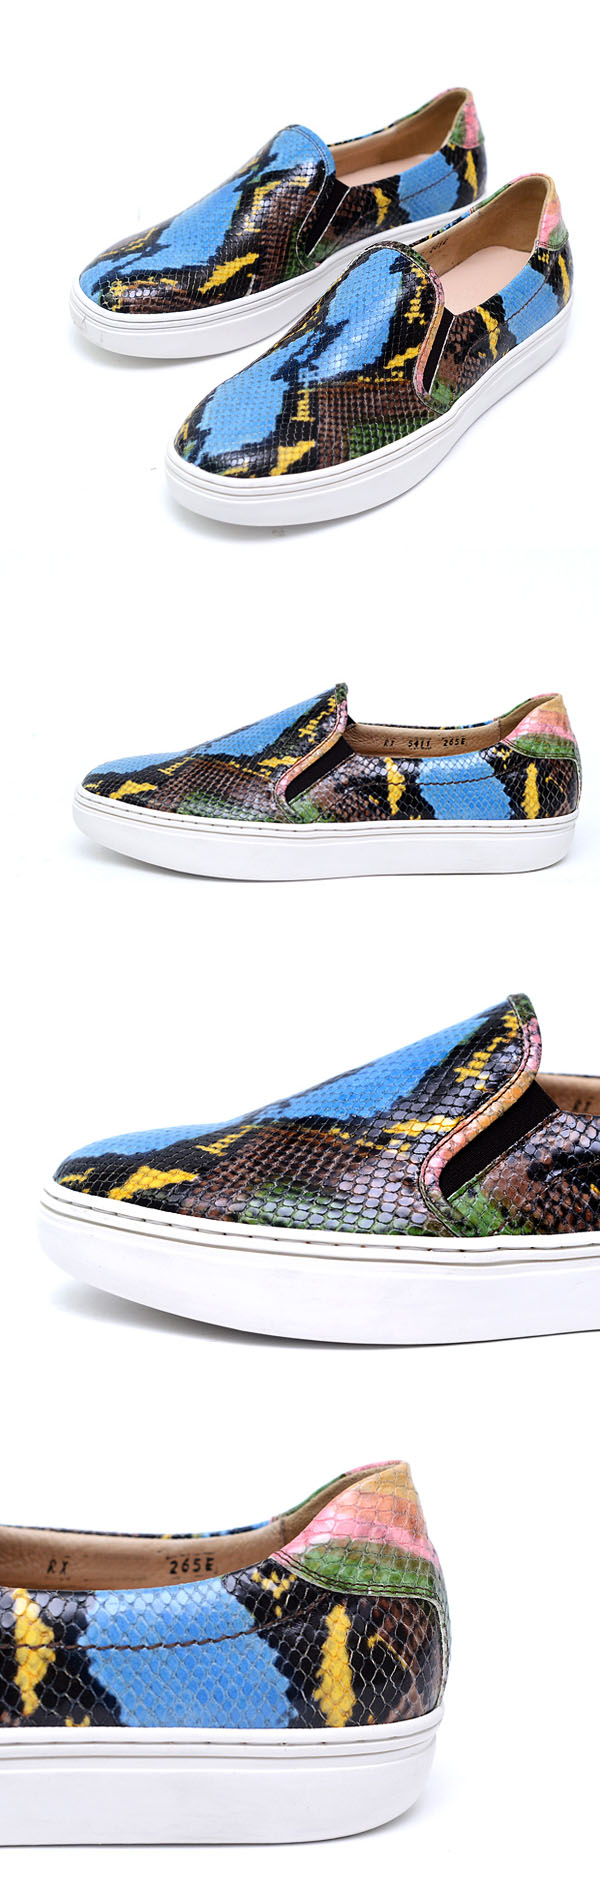 Sales :: Shoes & ETC :: Color Snakeskin & Alligator Slip On-Shoes 313 ...